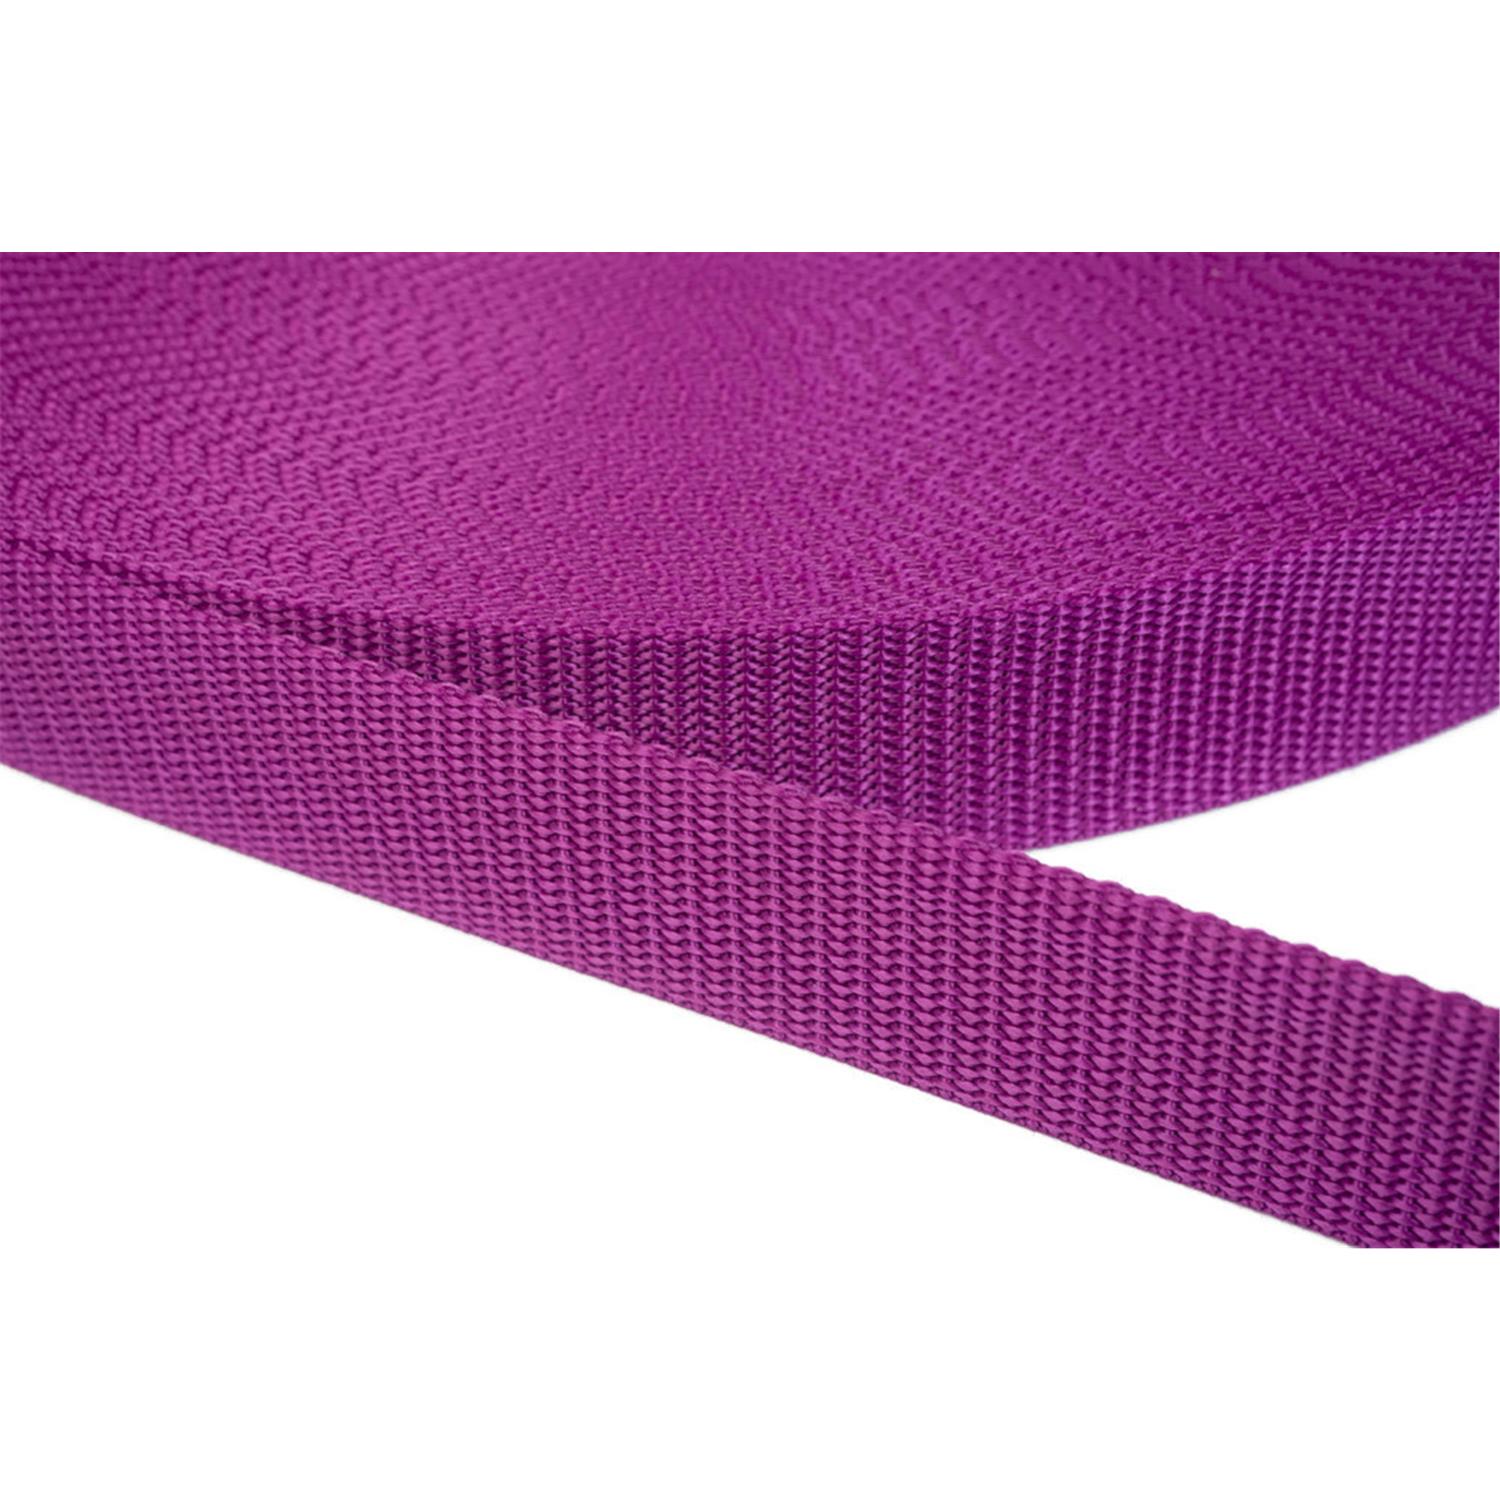 Gurtband 30mm breit aus Polypropylen in 41 Farben 22 - violettrot 12 Meter